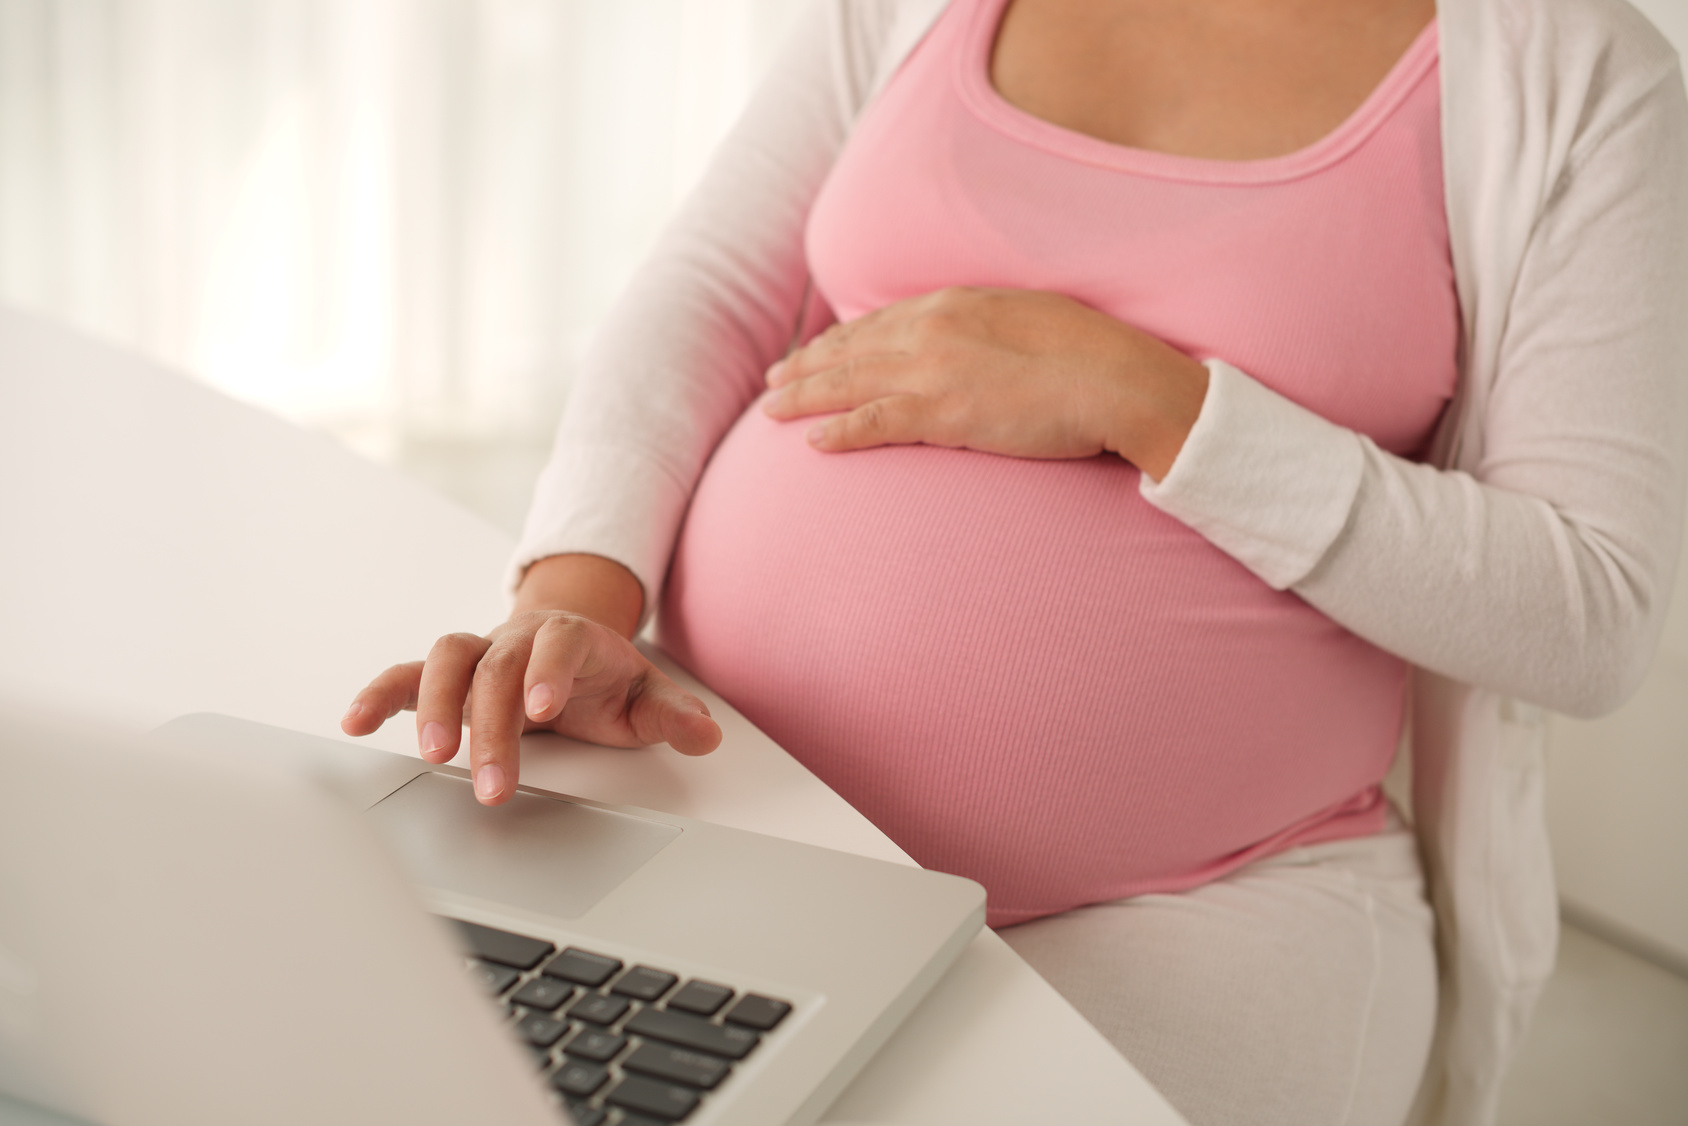 Internet-Delivered CBT for Depression During Pregnancy